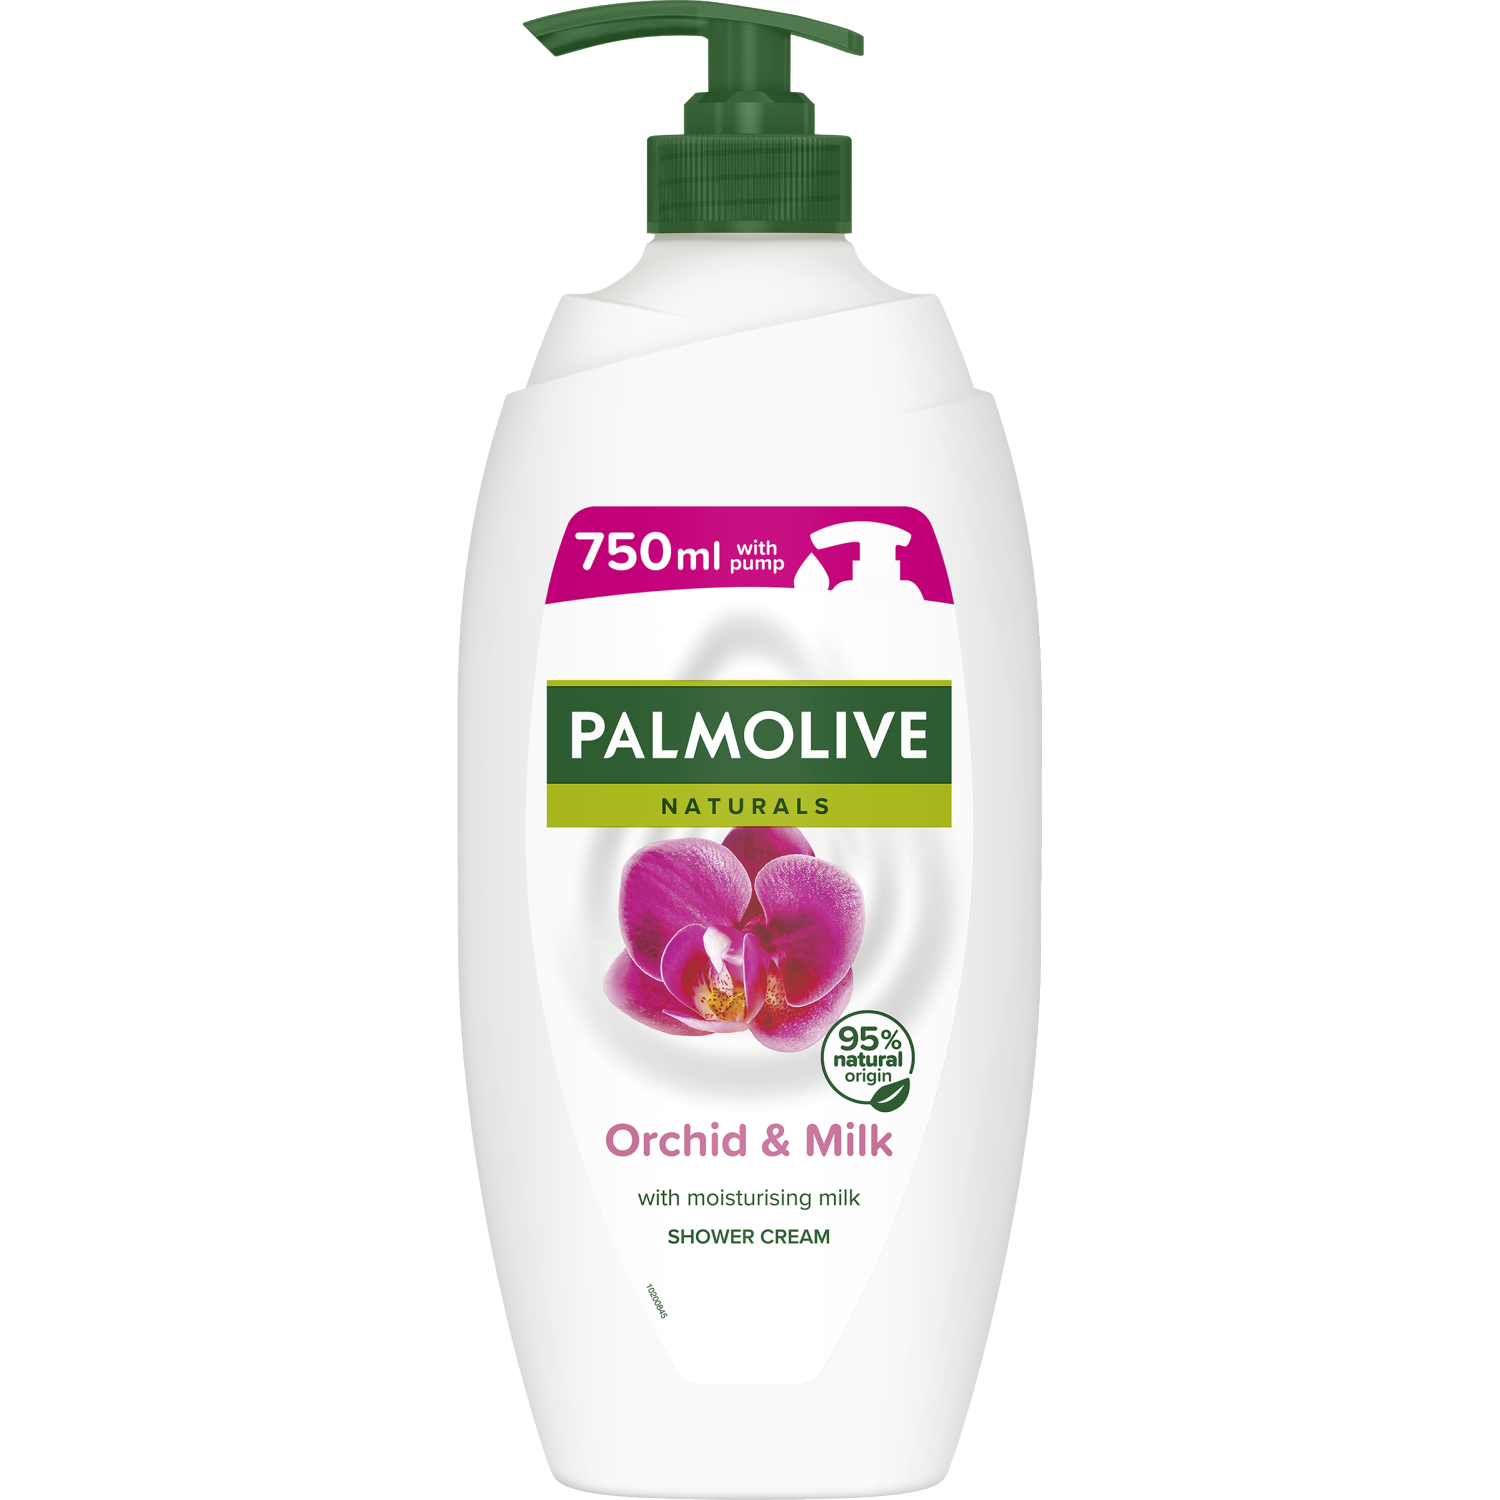 Palmolive гель для душа 750 мл. Крем гель для душа Palmolive 750 мл. Palmolive Orchid. Гель для душа Palmolive naturals Black Orchid, 250 мл. Palmolive гель для душа 750 мл запахи.